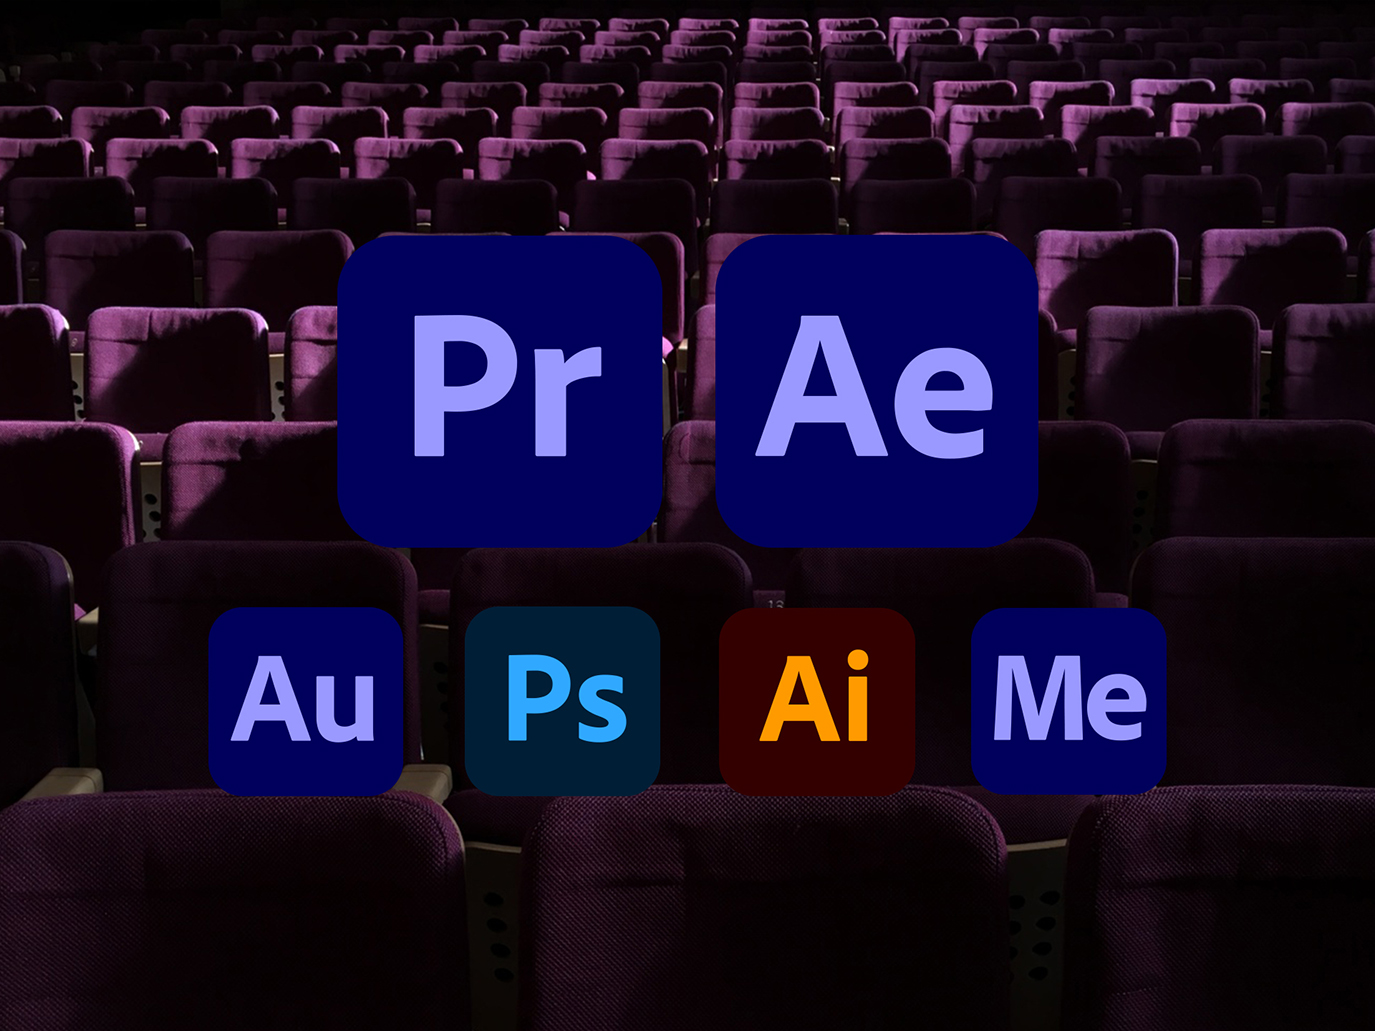 Professional video editor Adobe Premiere Pro